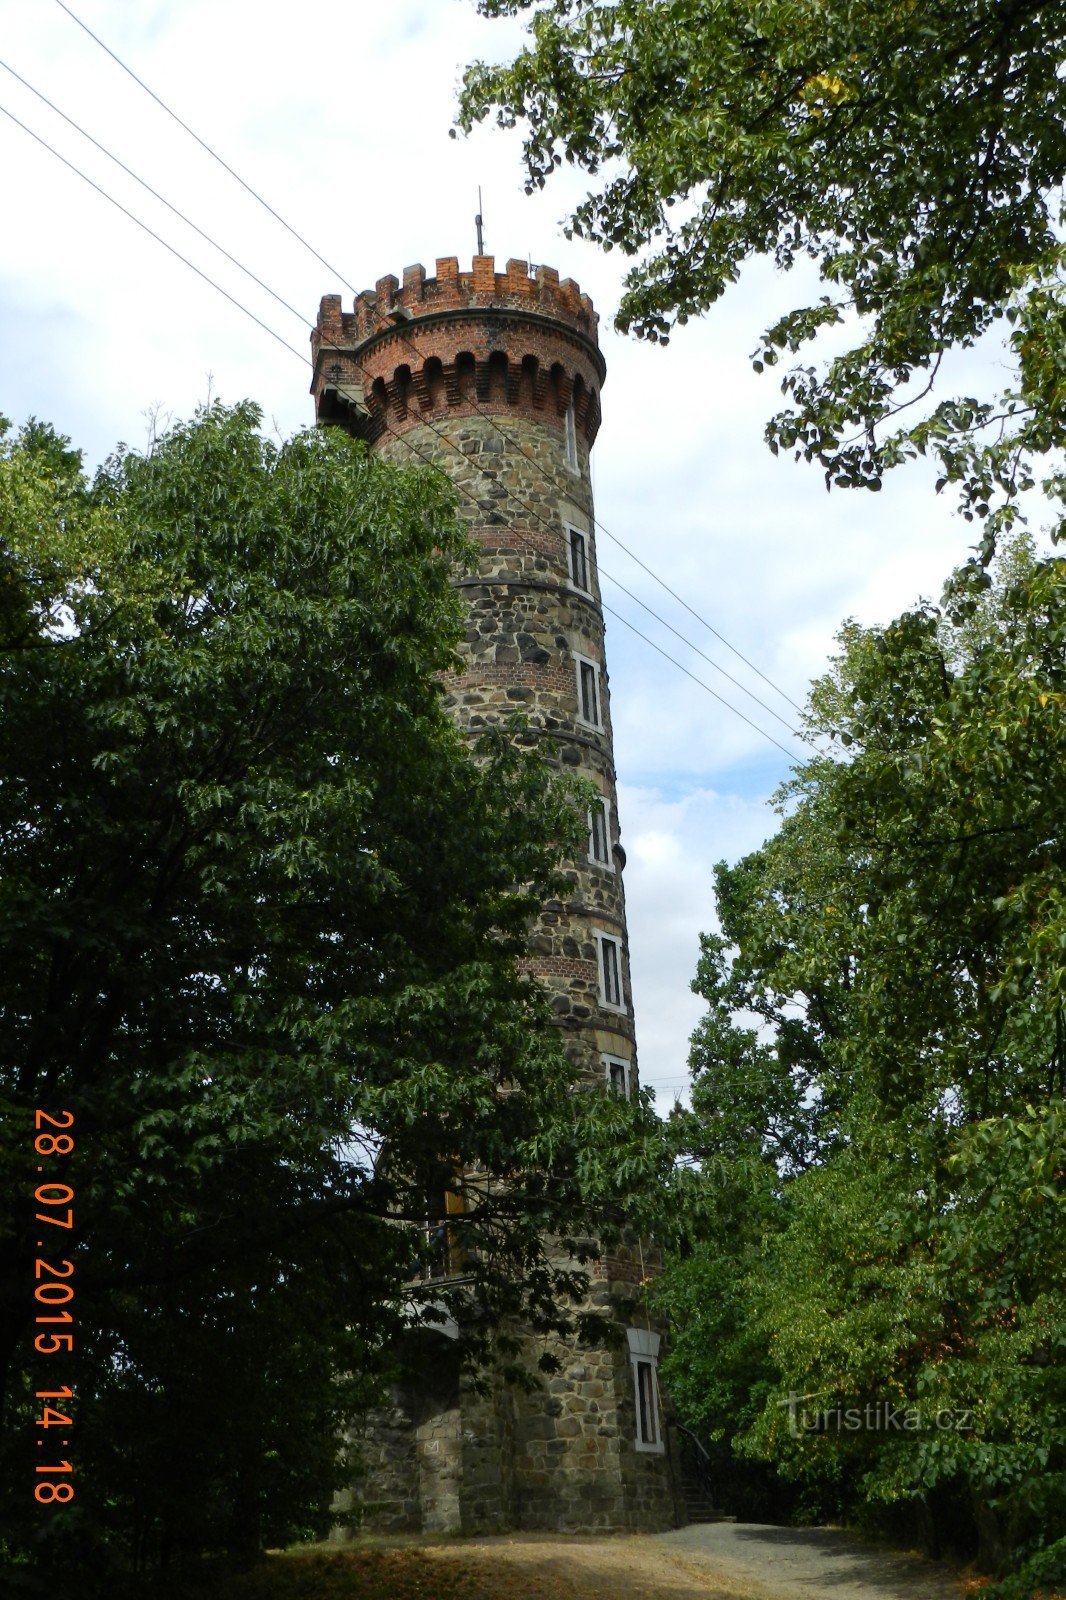 Cvilín - оглядова вежа в деталях ззовні, всередині та види